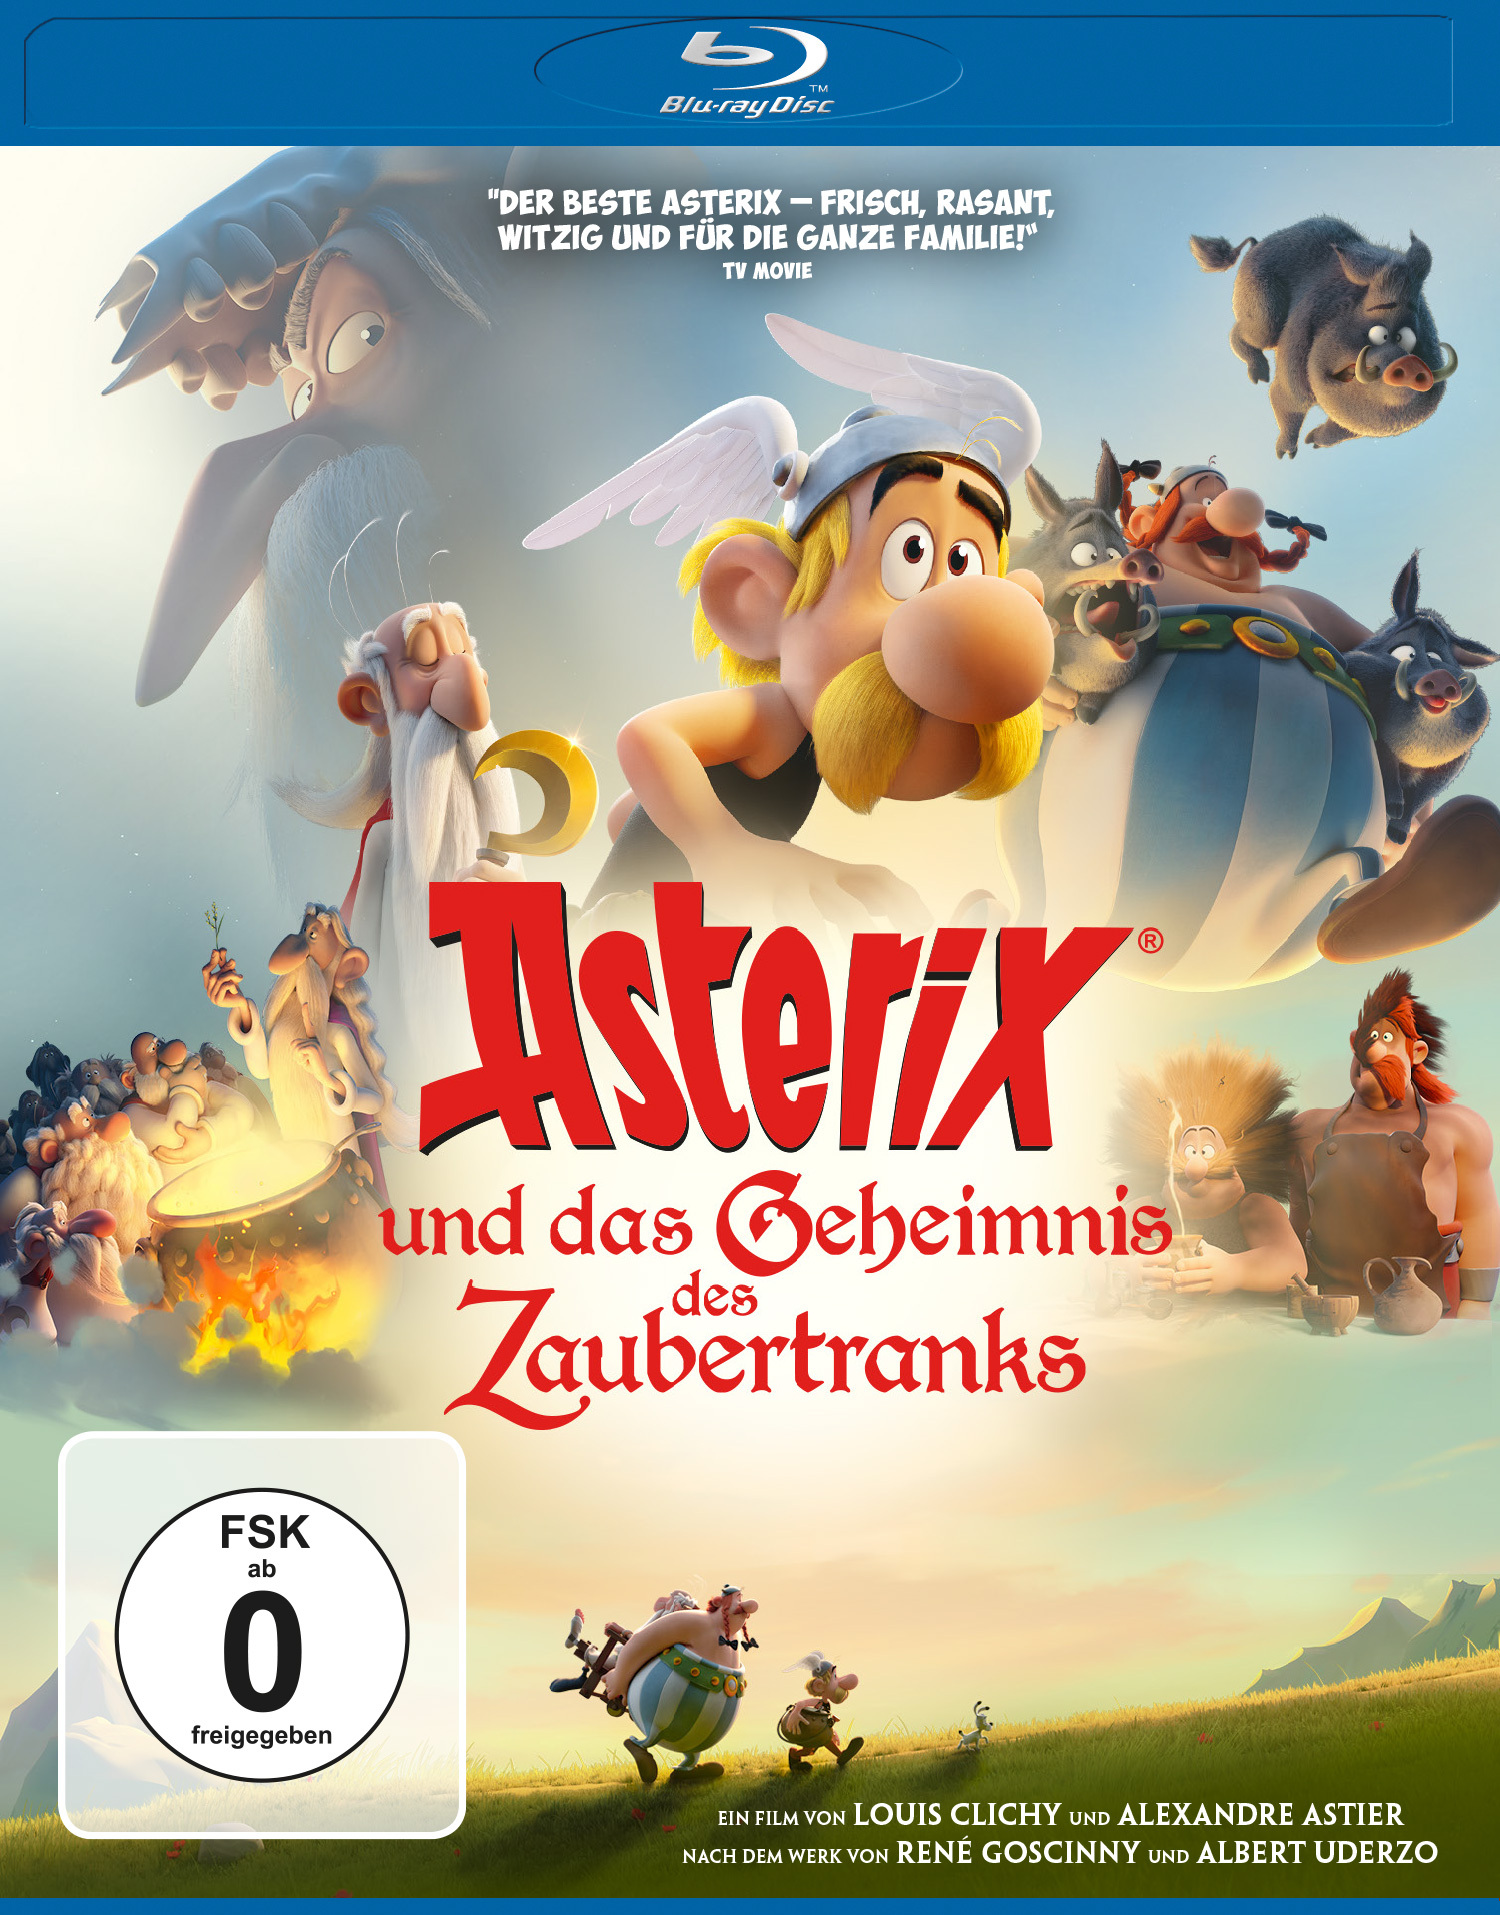 Image of Asterix und das Geheimnis des Zaubertranks